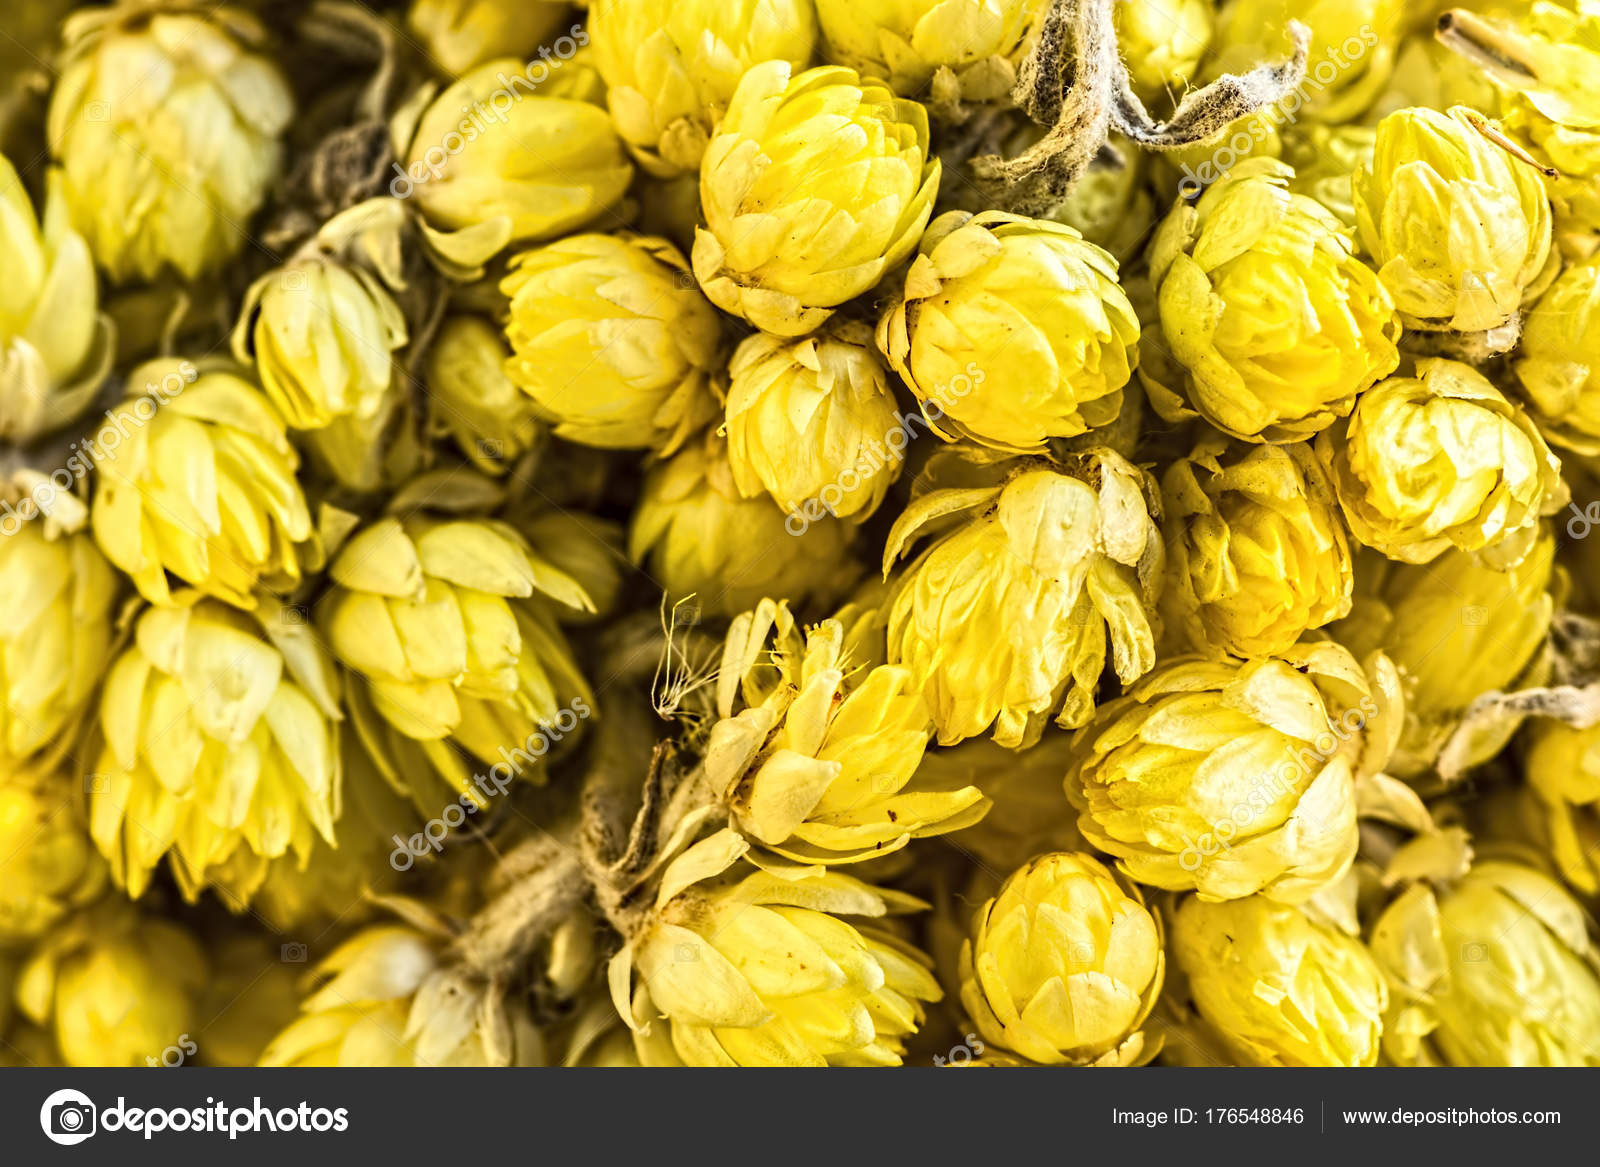 Fiori Gialli Tipi.Yellow Dry Flowers Close Up Stock Photo C Gokcengulenc 176548846